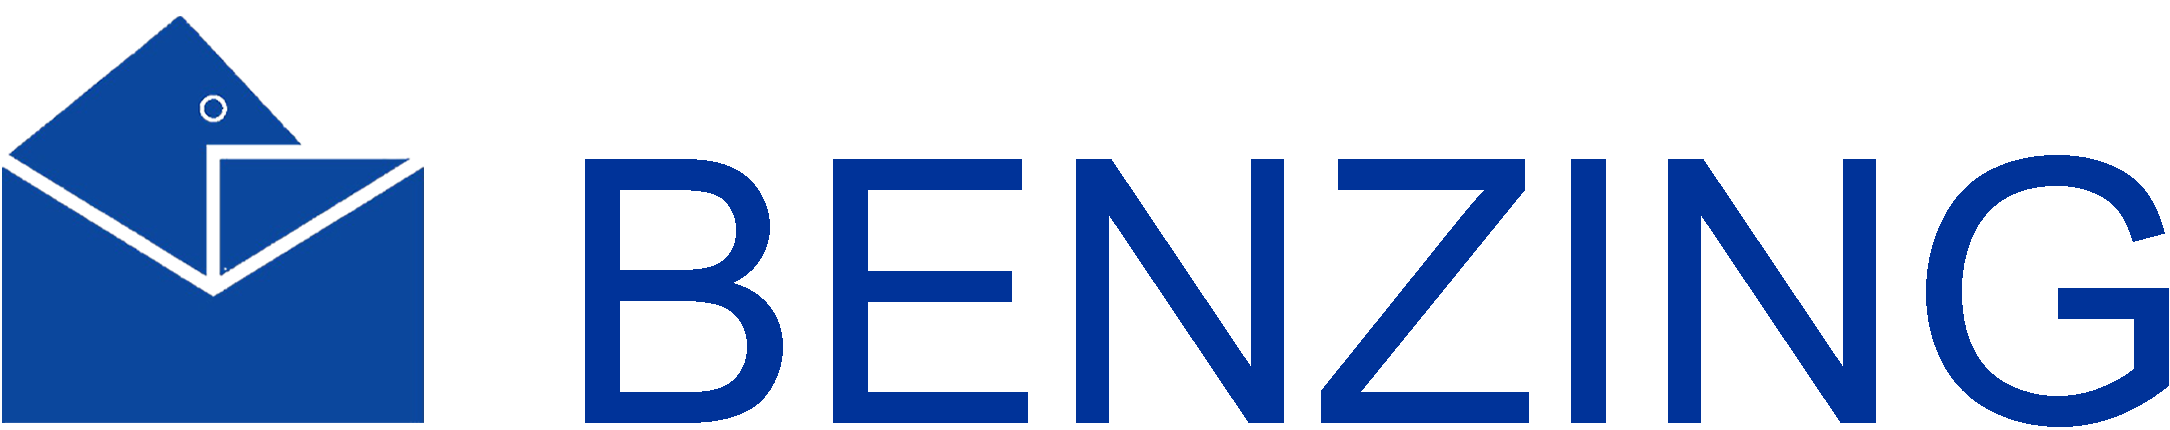 Benzing logo